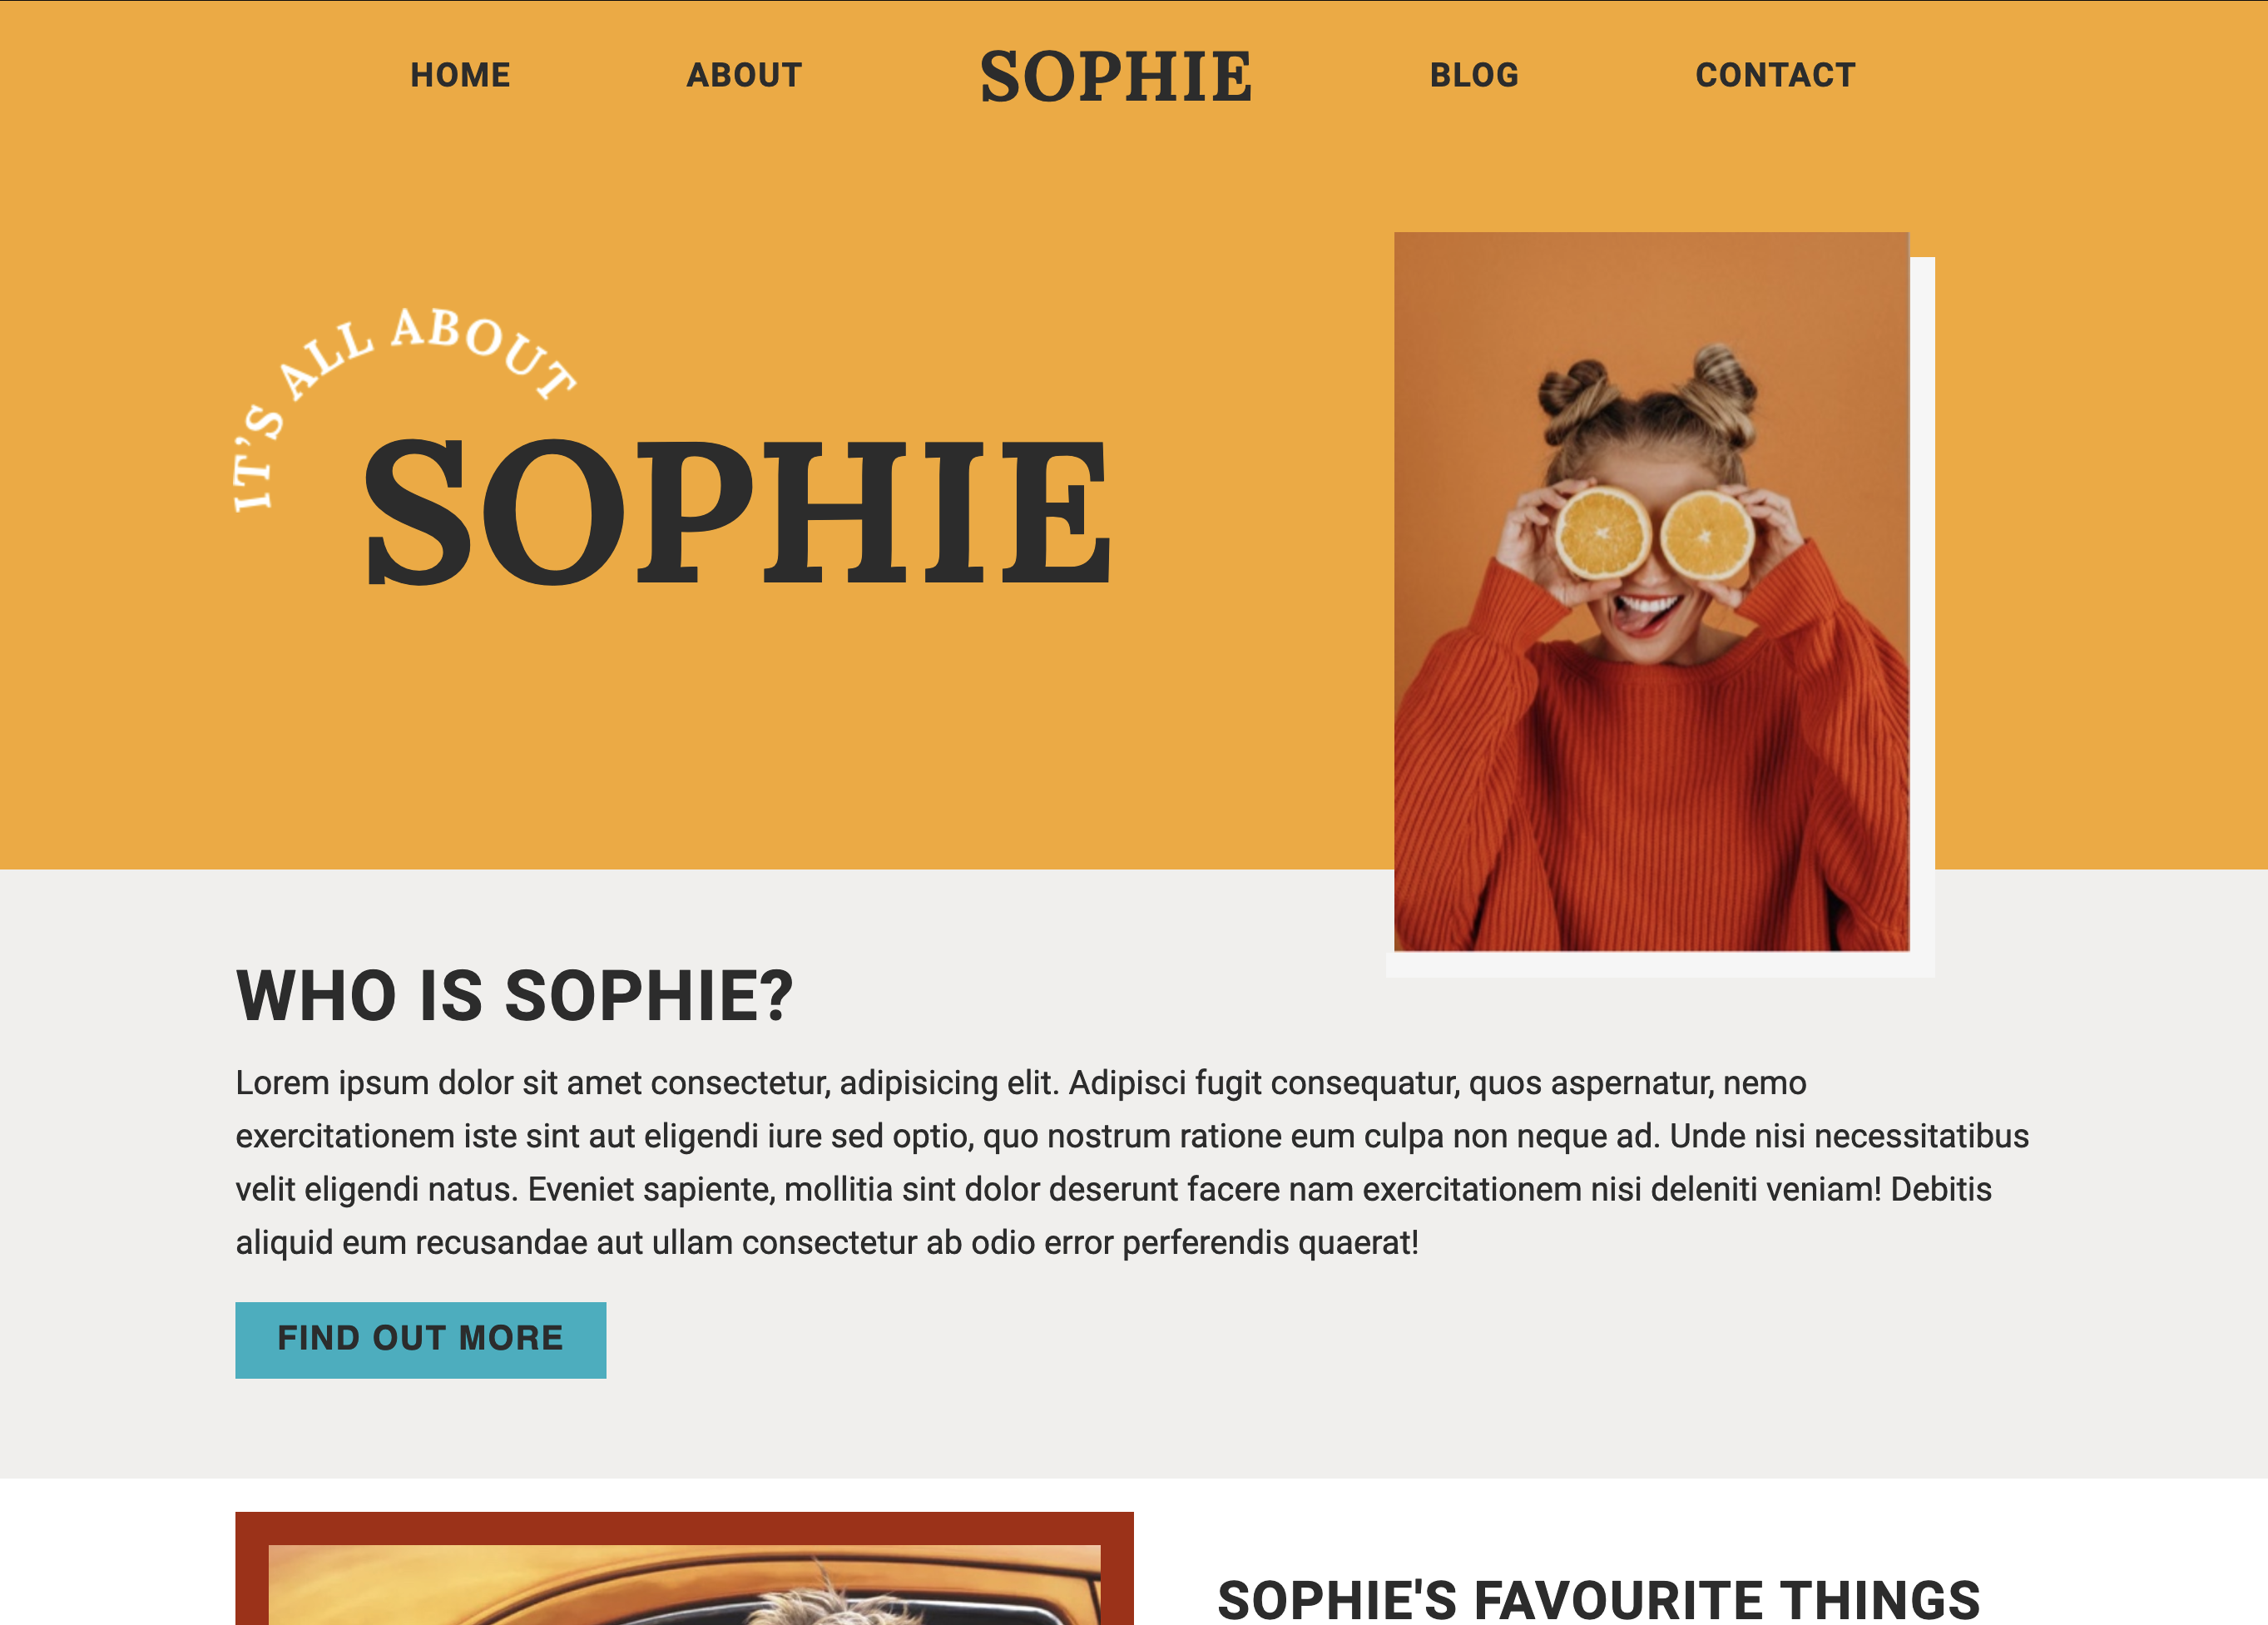 Image of Sophie's Blog webpage